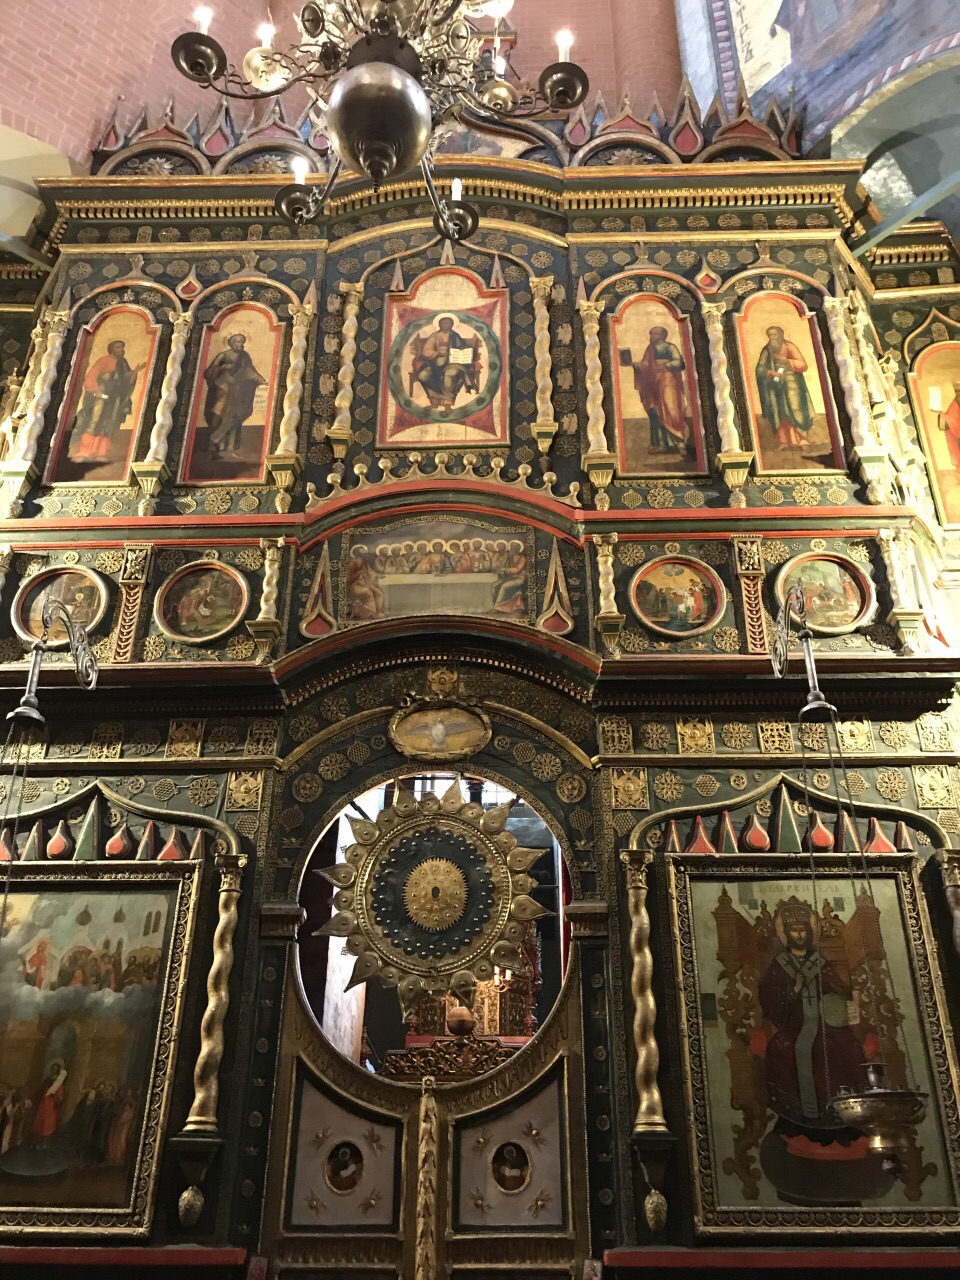 瓦西里大教堂内部图片